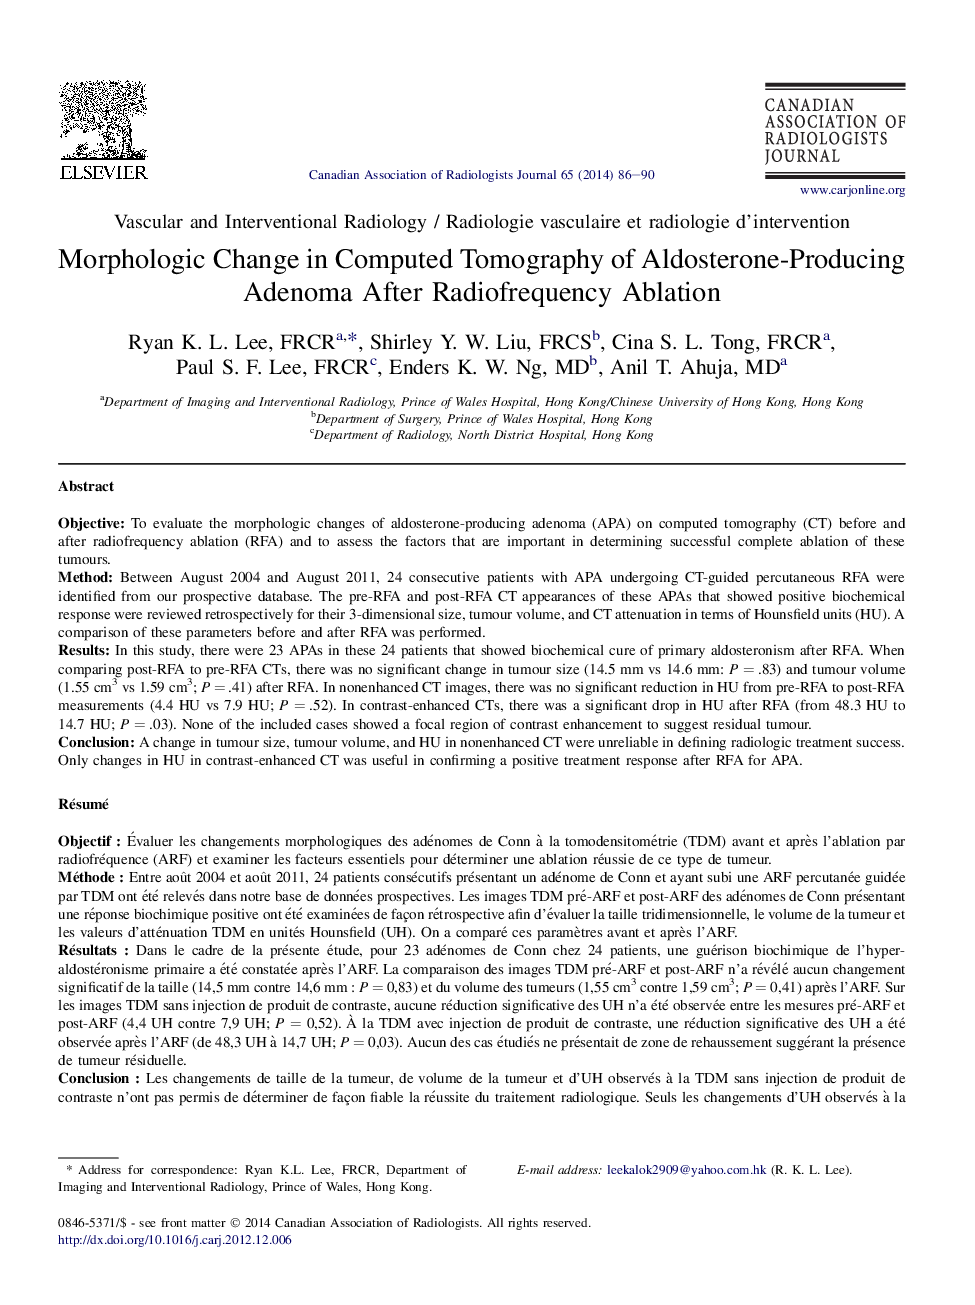 تغییرات مورفولوژیکی در توموگرافی کامپیوتری آلدسترون تولید آدرنوم پس از تخریب رادیوفرکوویسی 